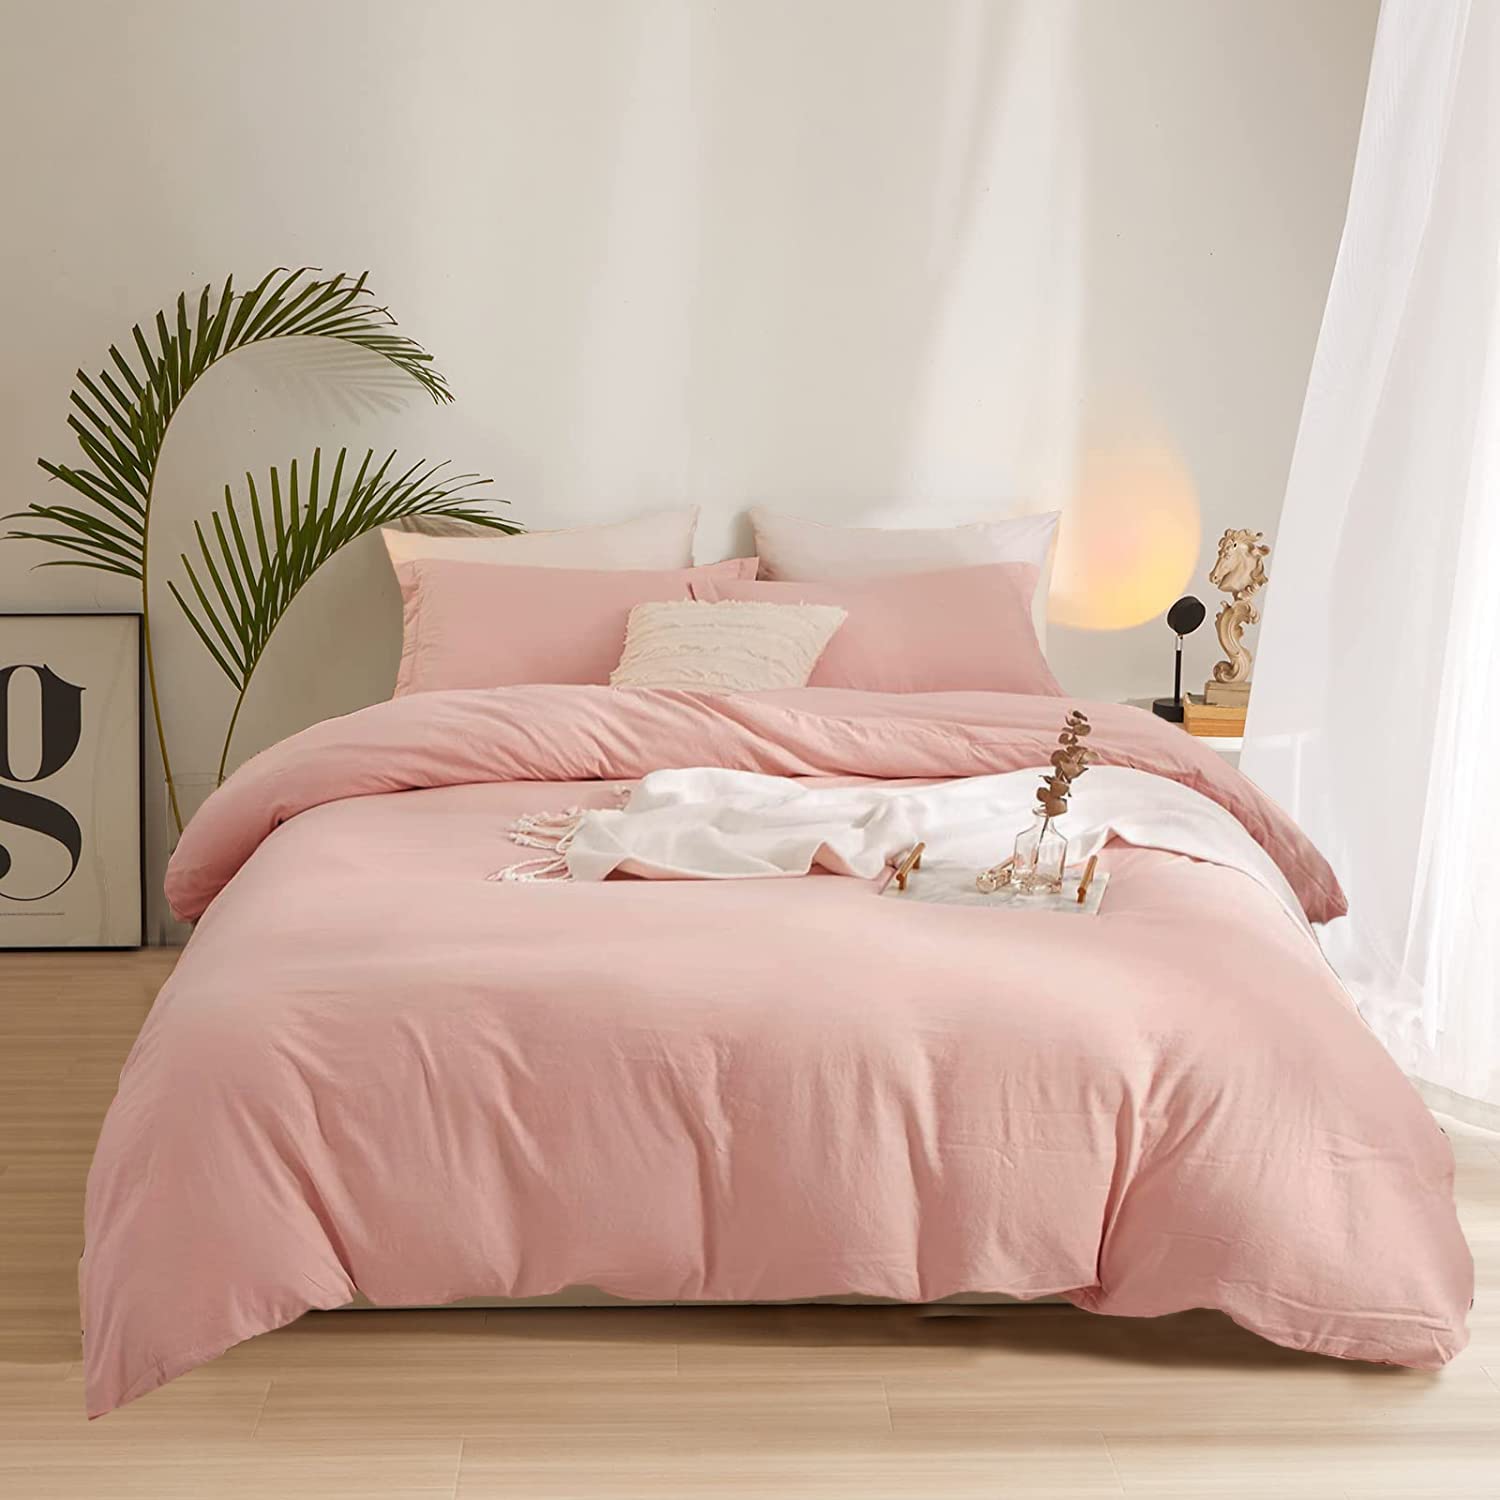 Chiếc giường màu hồng pastel vô cùng êm ái, ấm áp